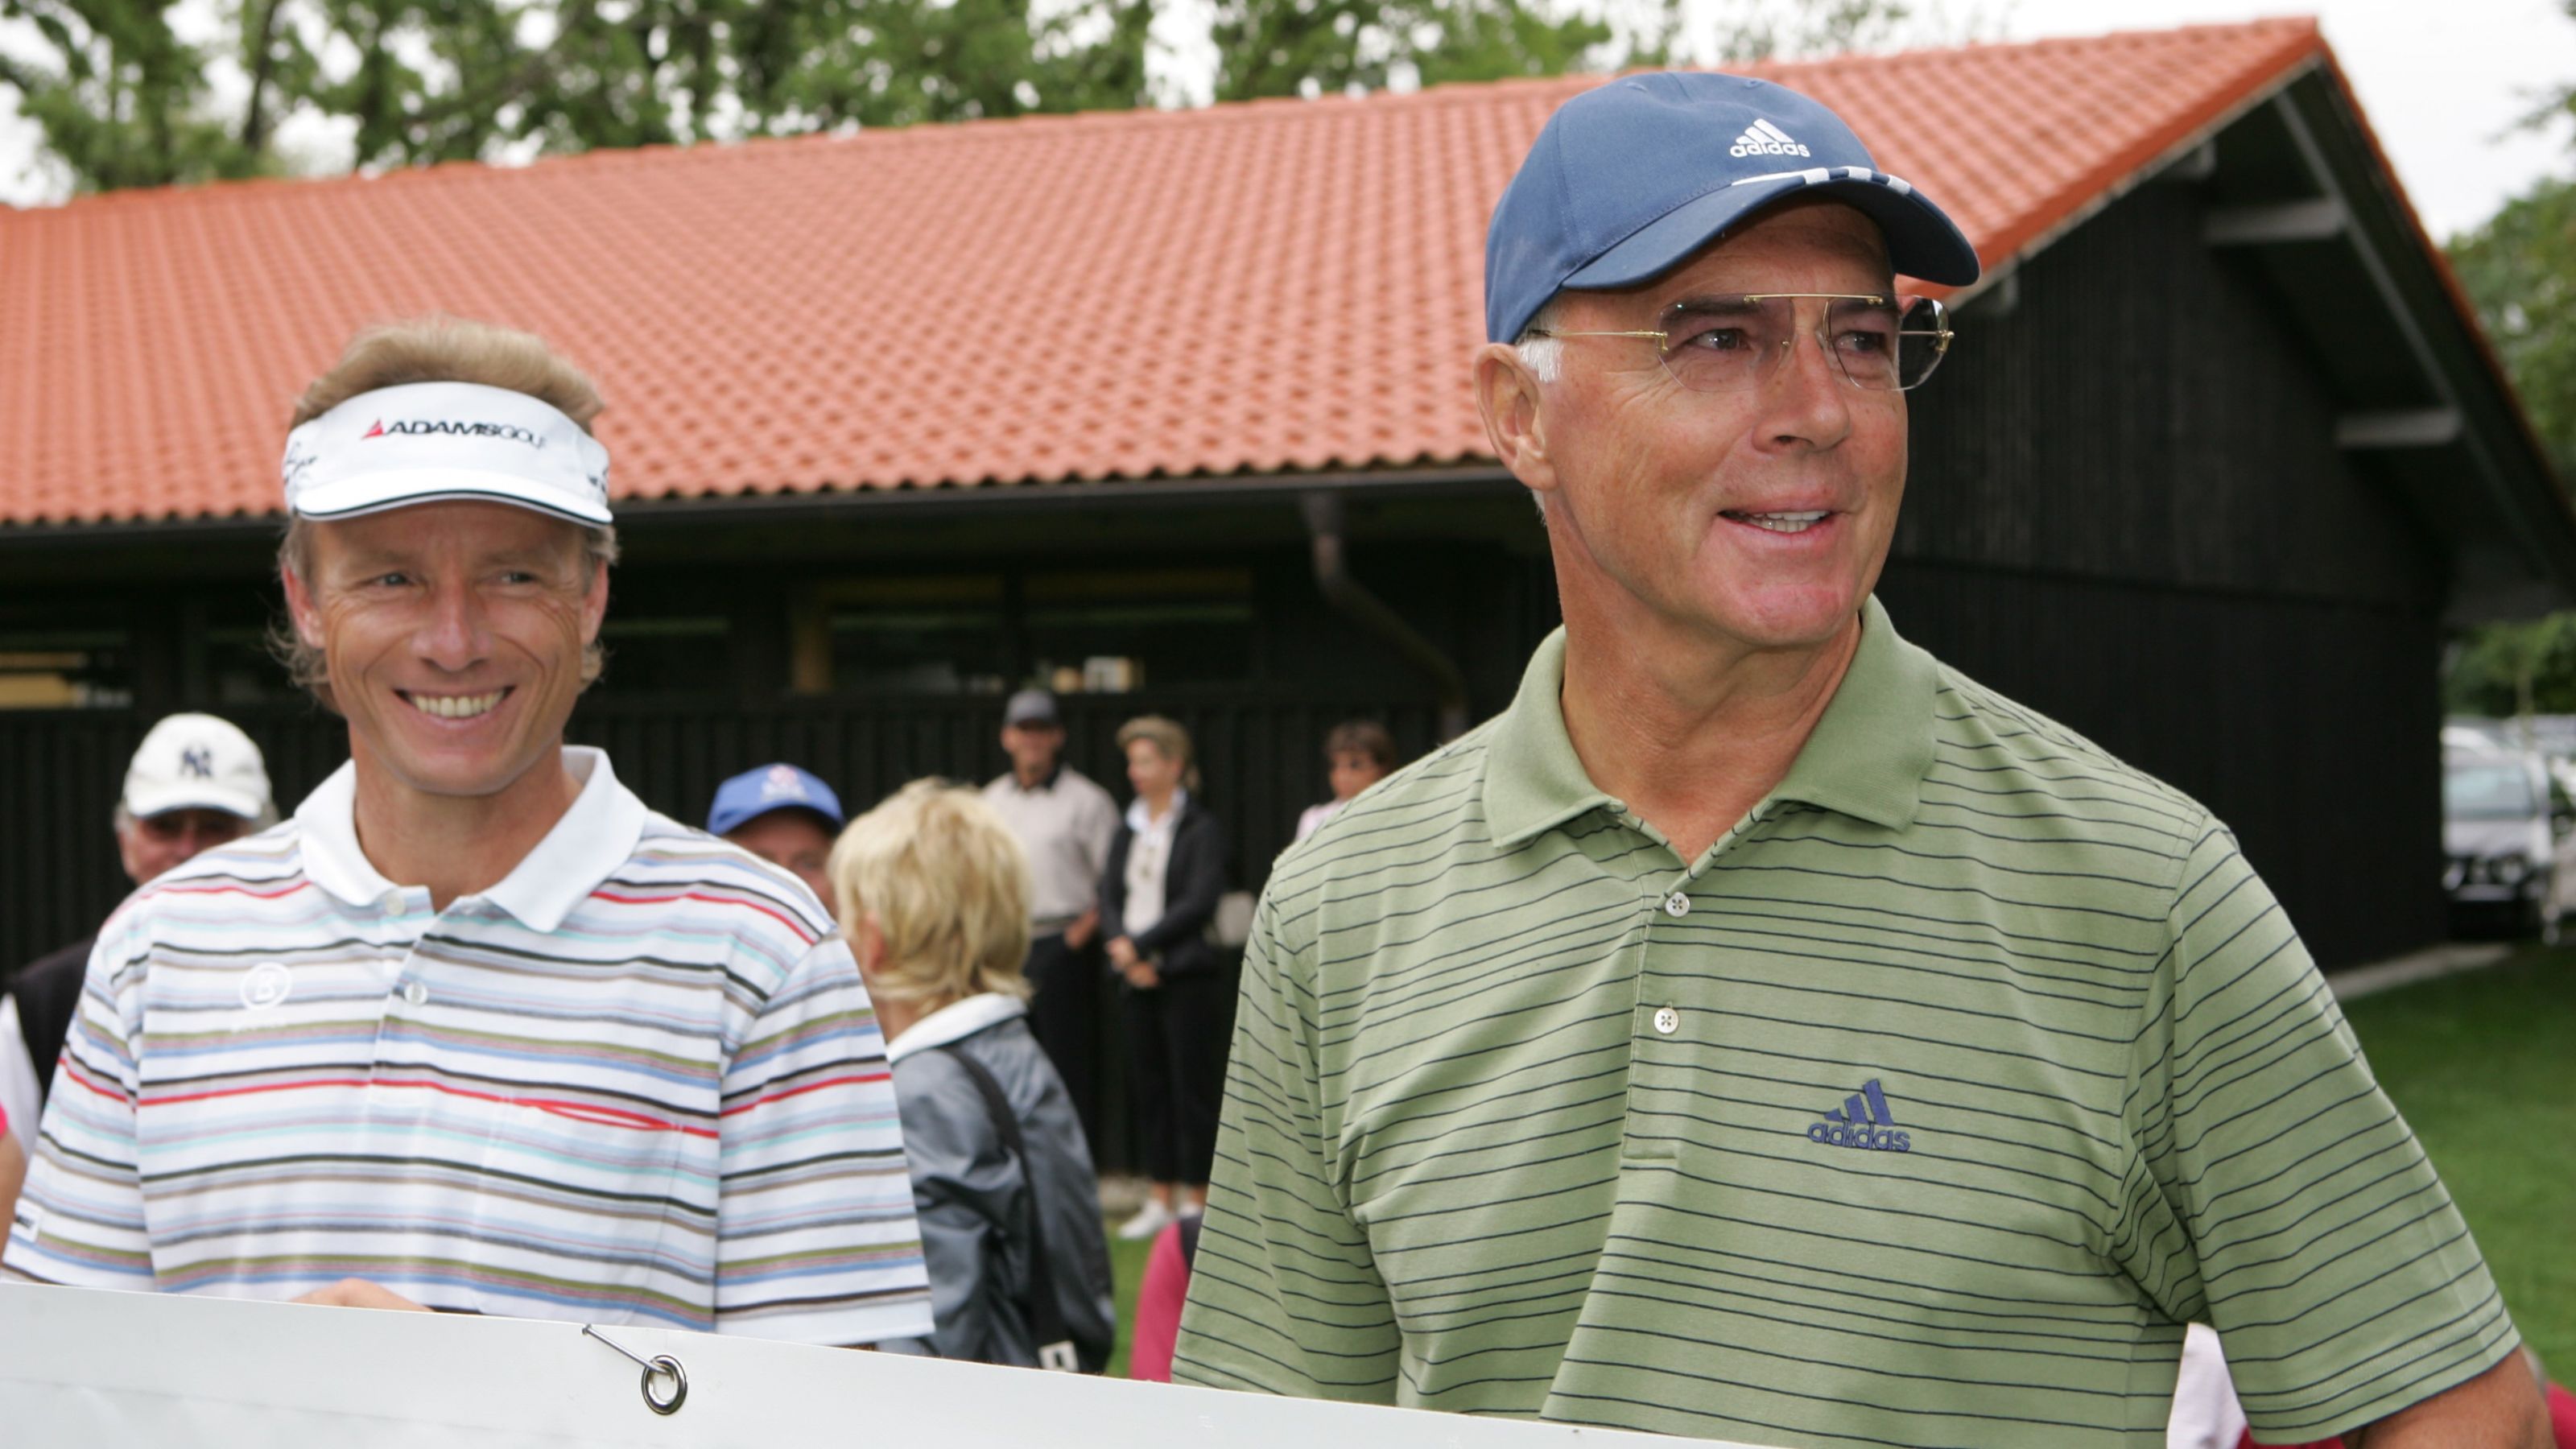 Besondere Beziehung: Bernhard Langer und Franz Beckenbauer bei einem Golfturnier im Sommer 2007 in Bad Griesbach. © Quellness & Golf Resort Bad Griesbach